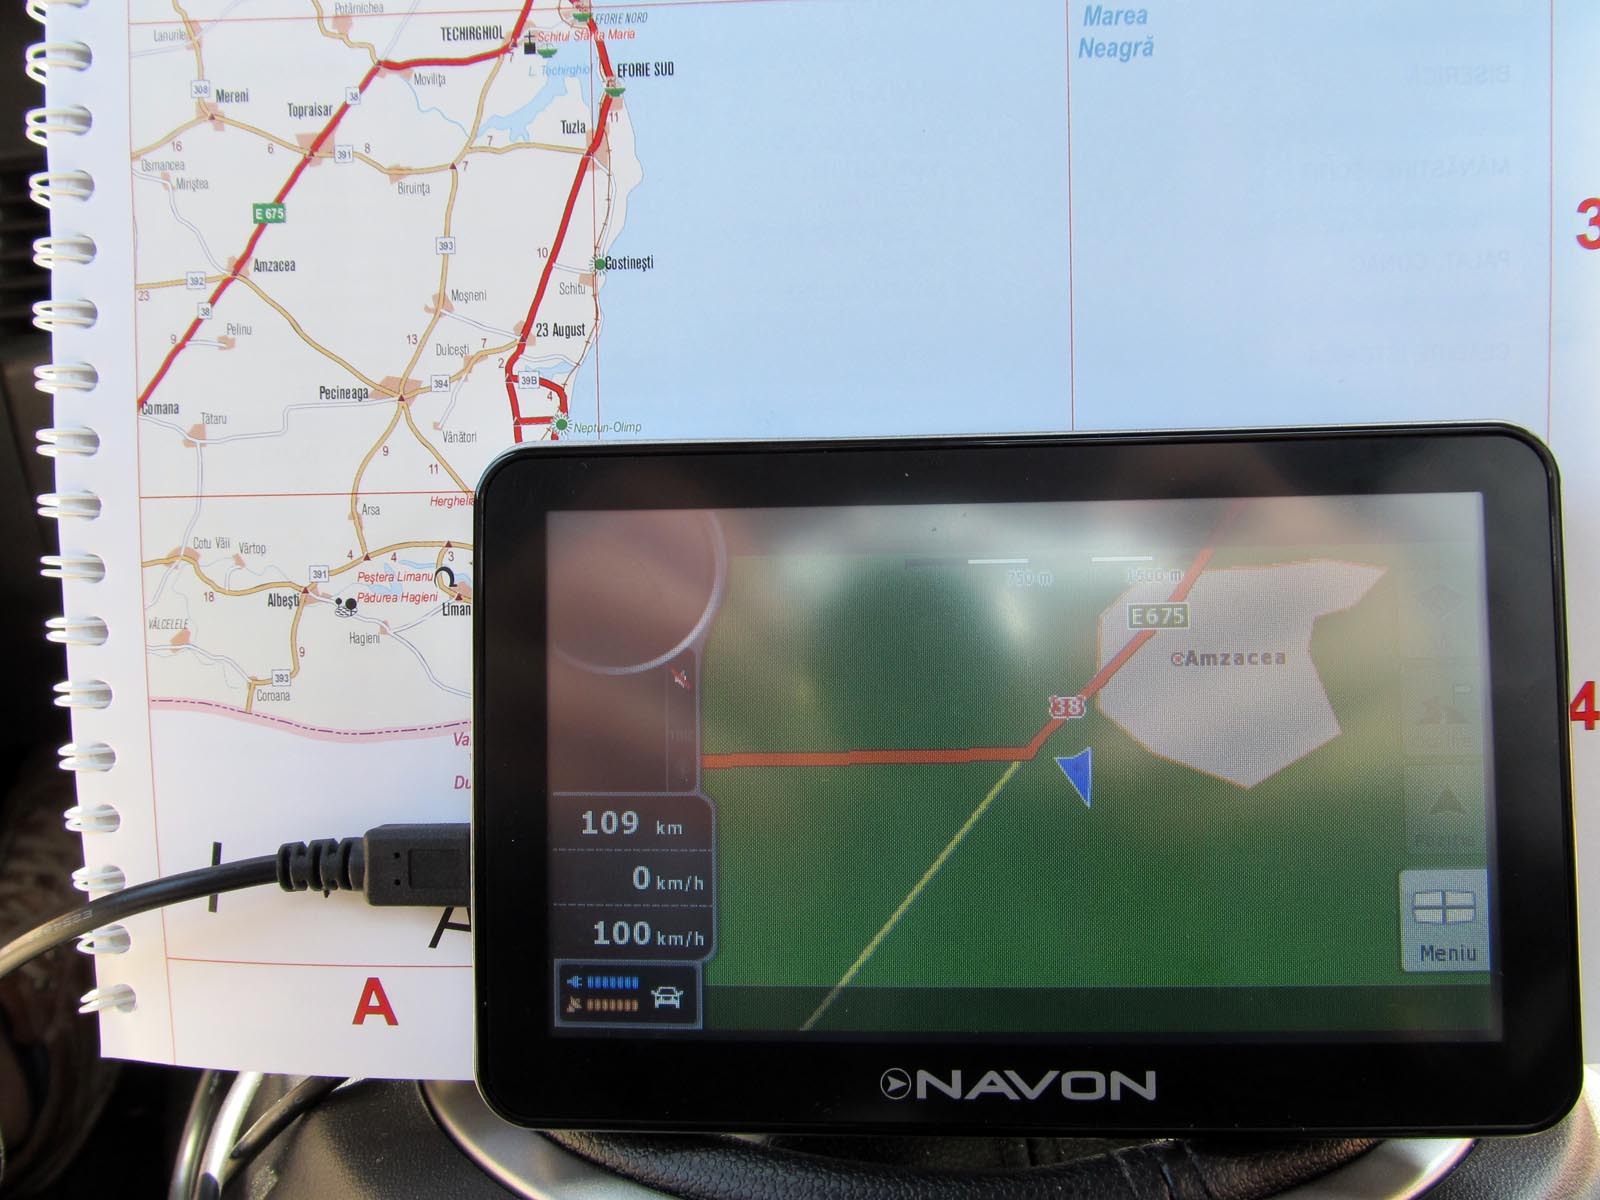 Daca se debifeaza optiunea drumuri neasfaltate, GPS-ul alege calea mai sigura